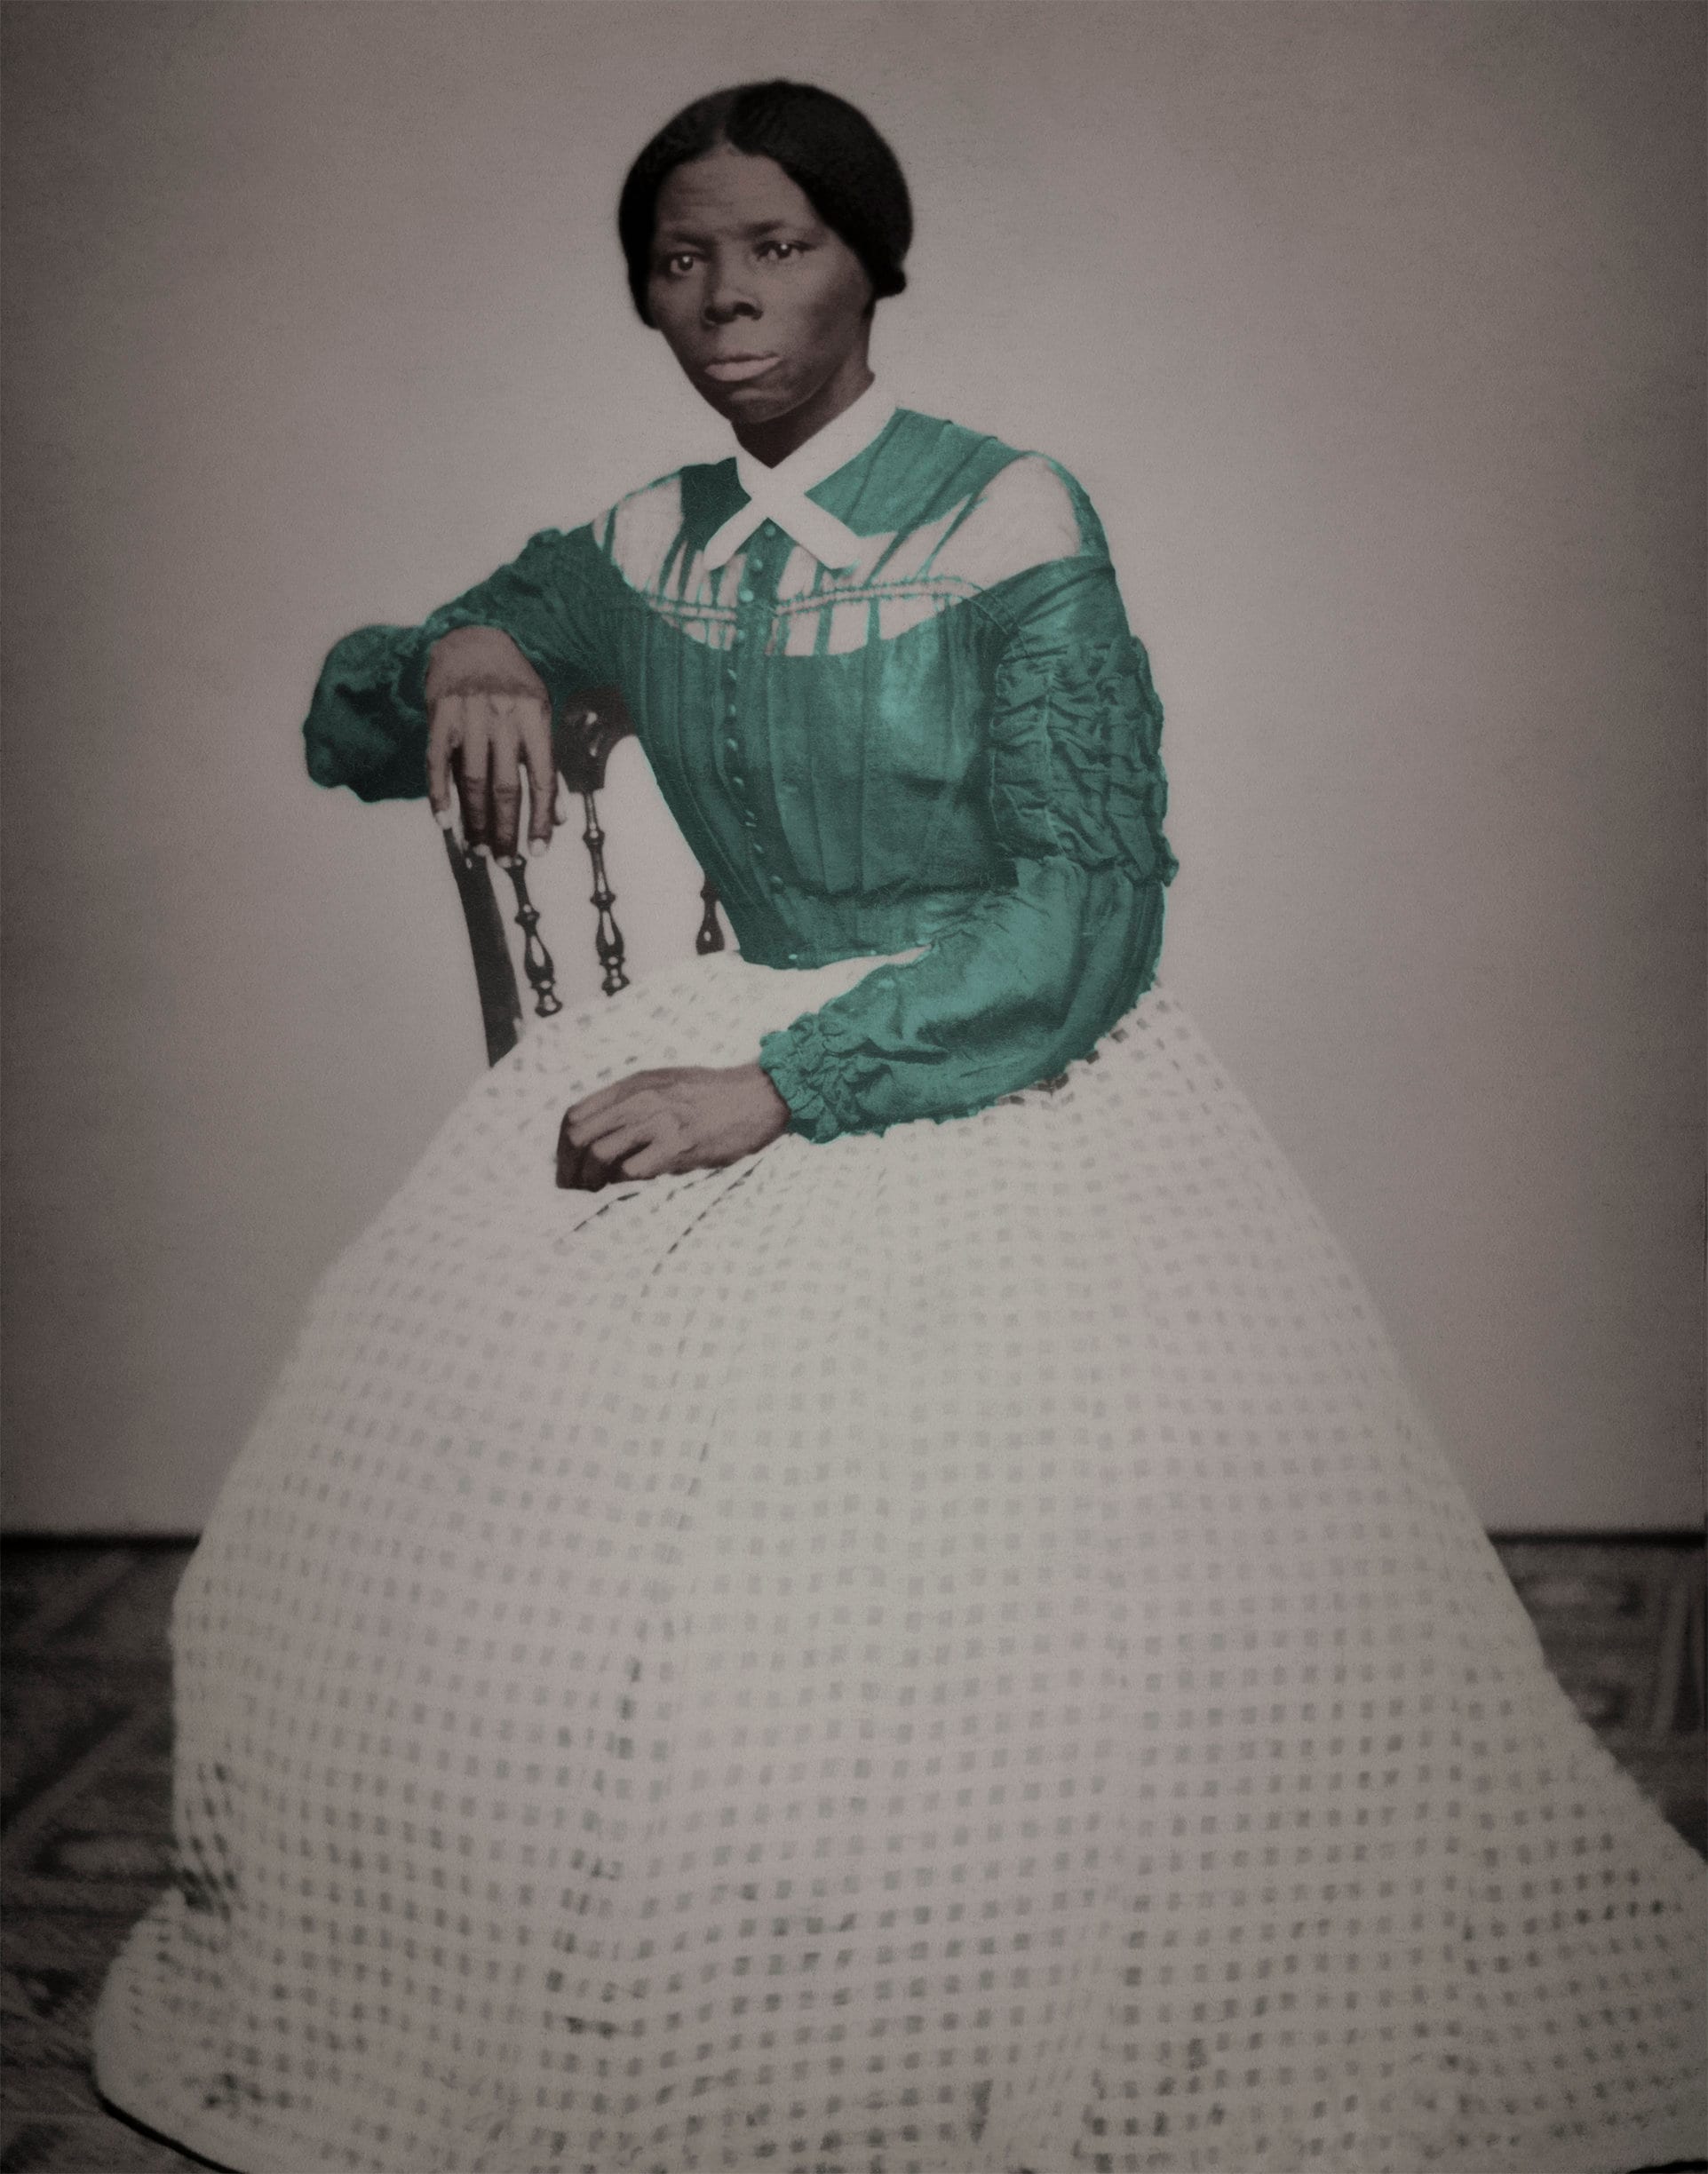 Harriet Tubman Abolitionist and Suffragette Portrait Historical Pix